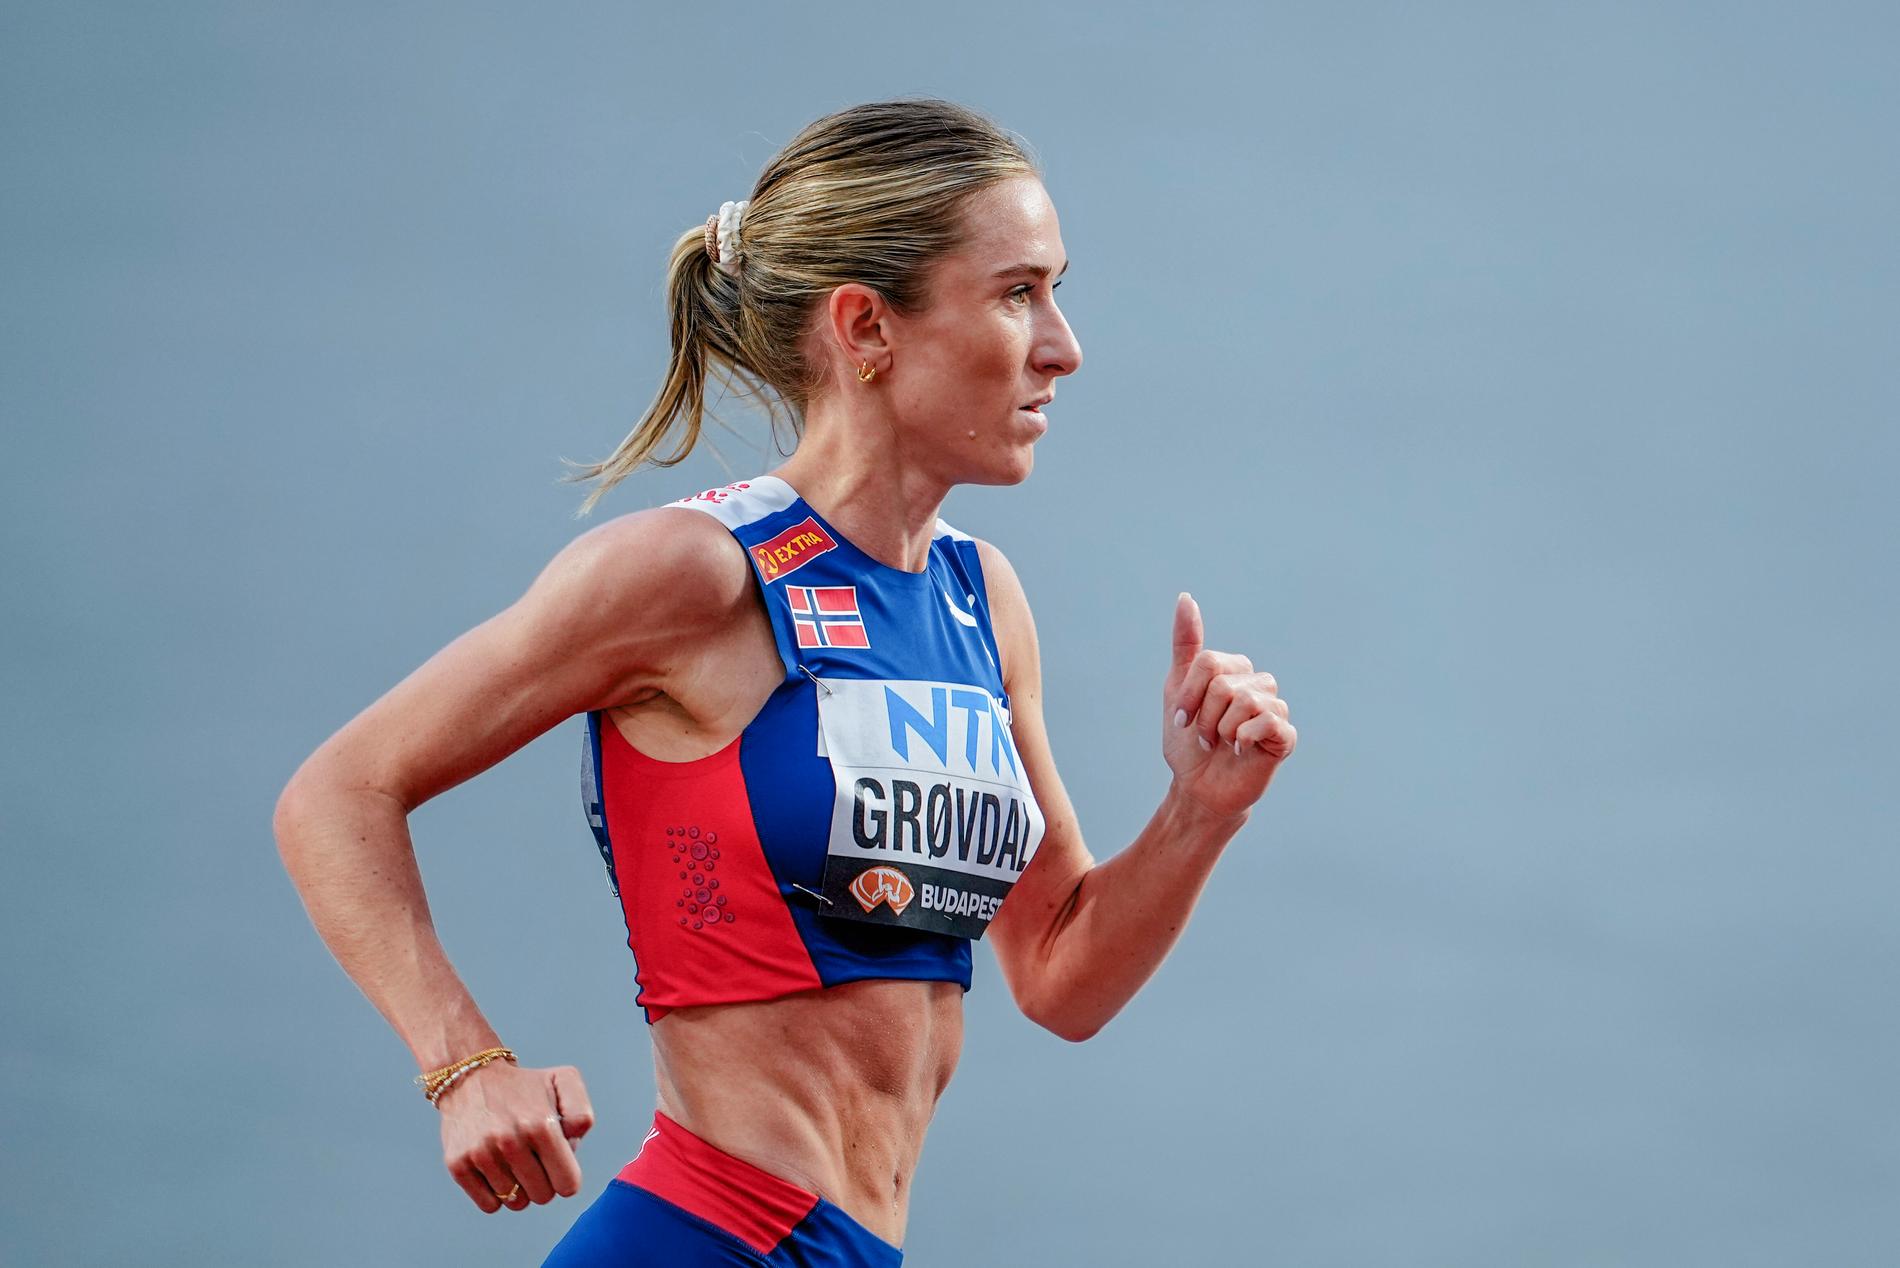 Nuovo record norvegese: Caroline Berkely Grovdal ha corso 1:07:34 nella mezza maratona di Copenaghen. 